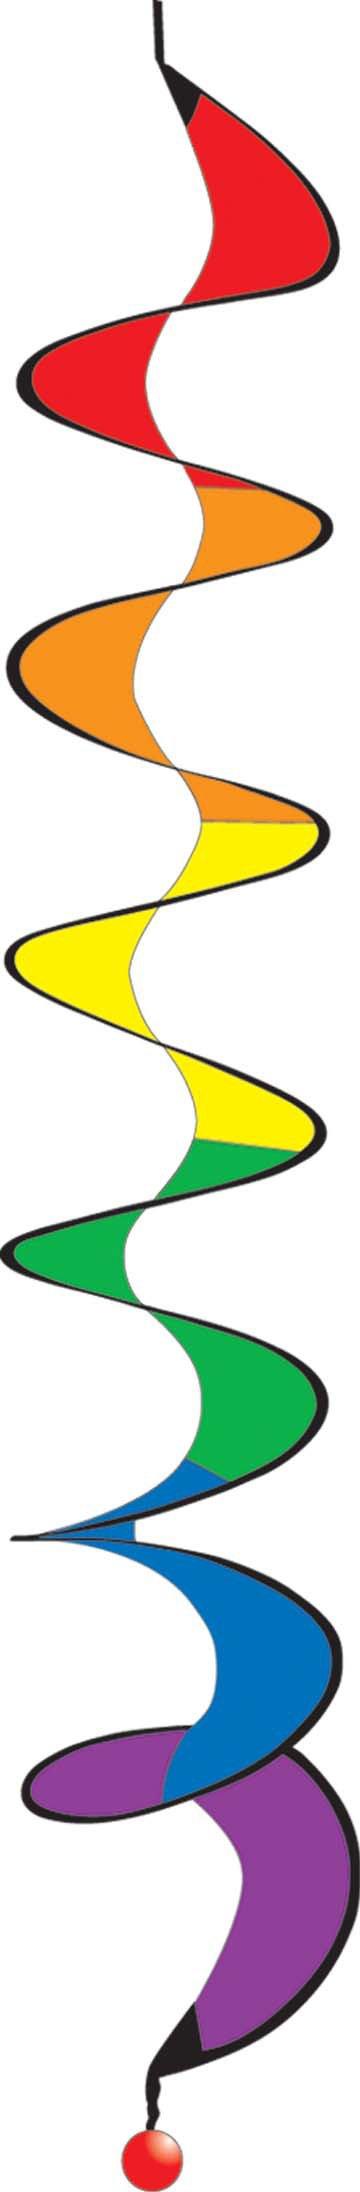 45-inch Rainbow Spiral Twister Wind Spinner - Kitty Hawk Kites Online Store